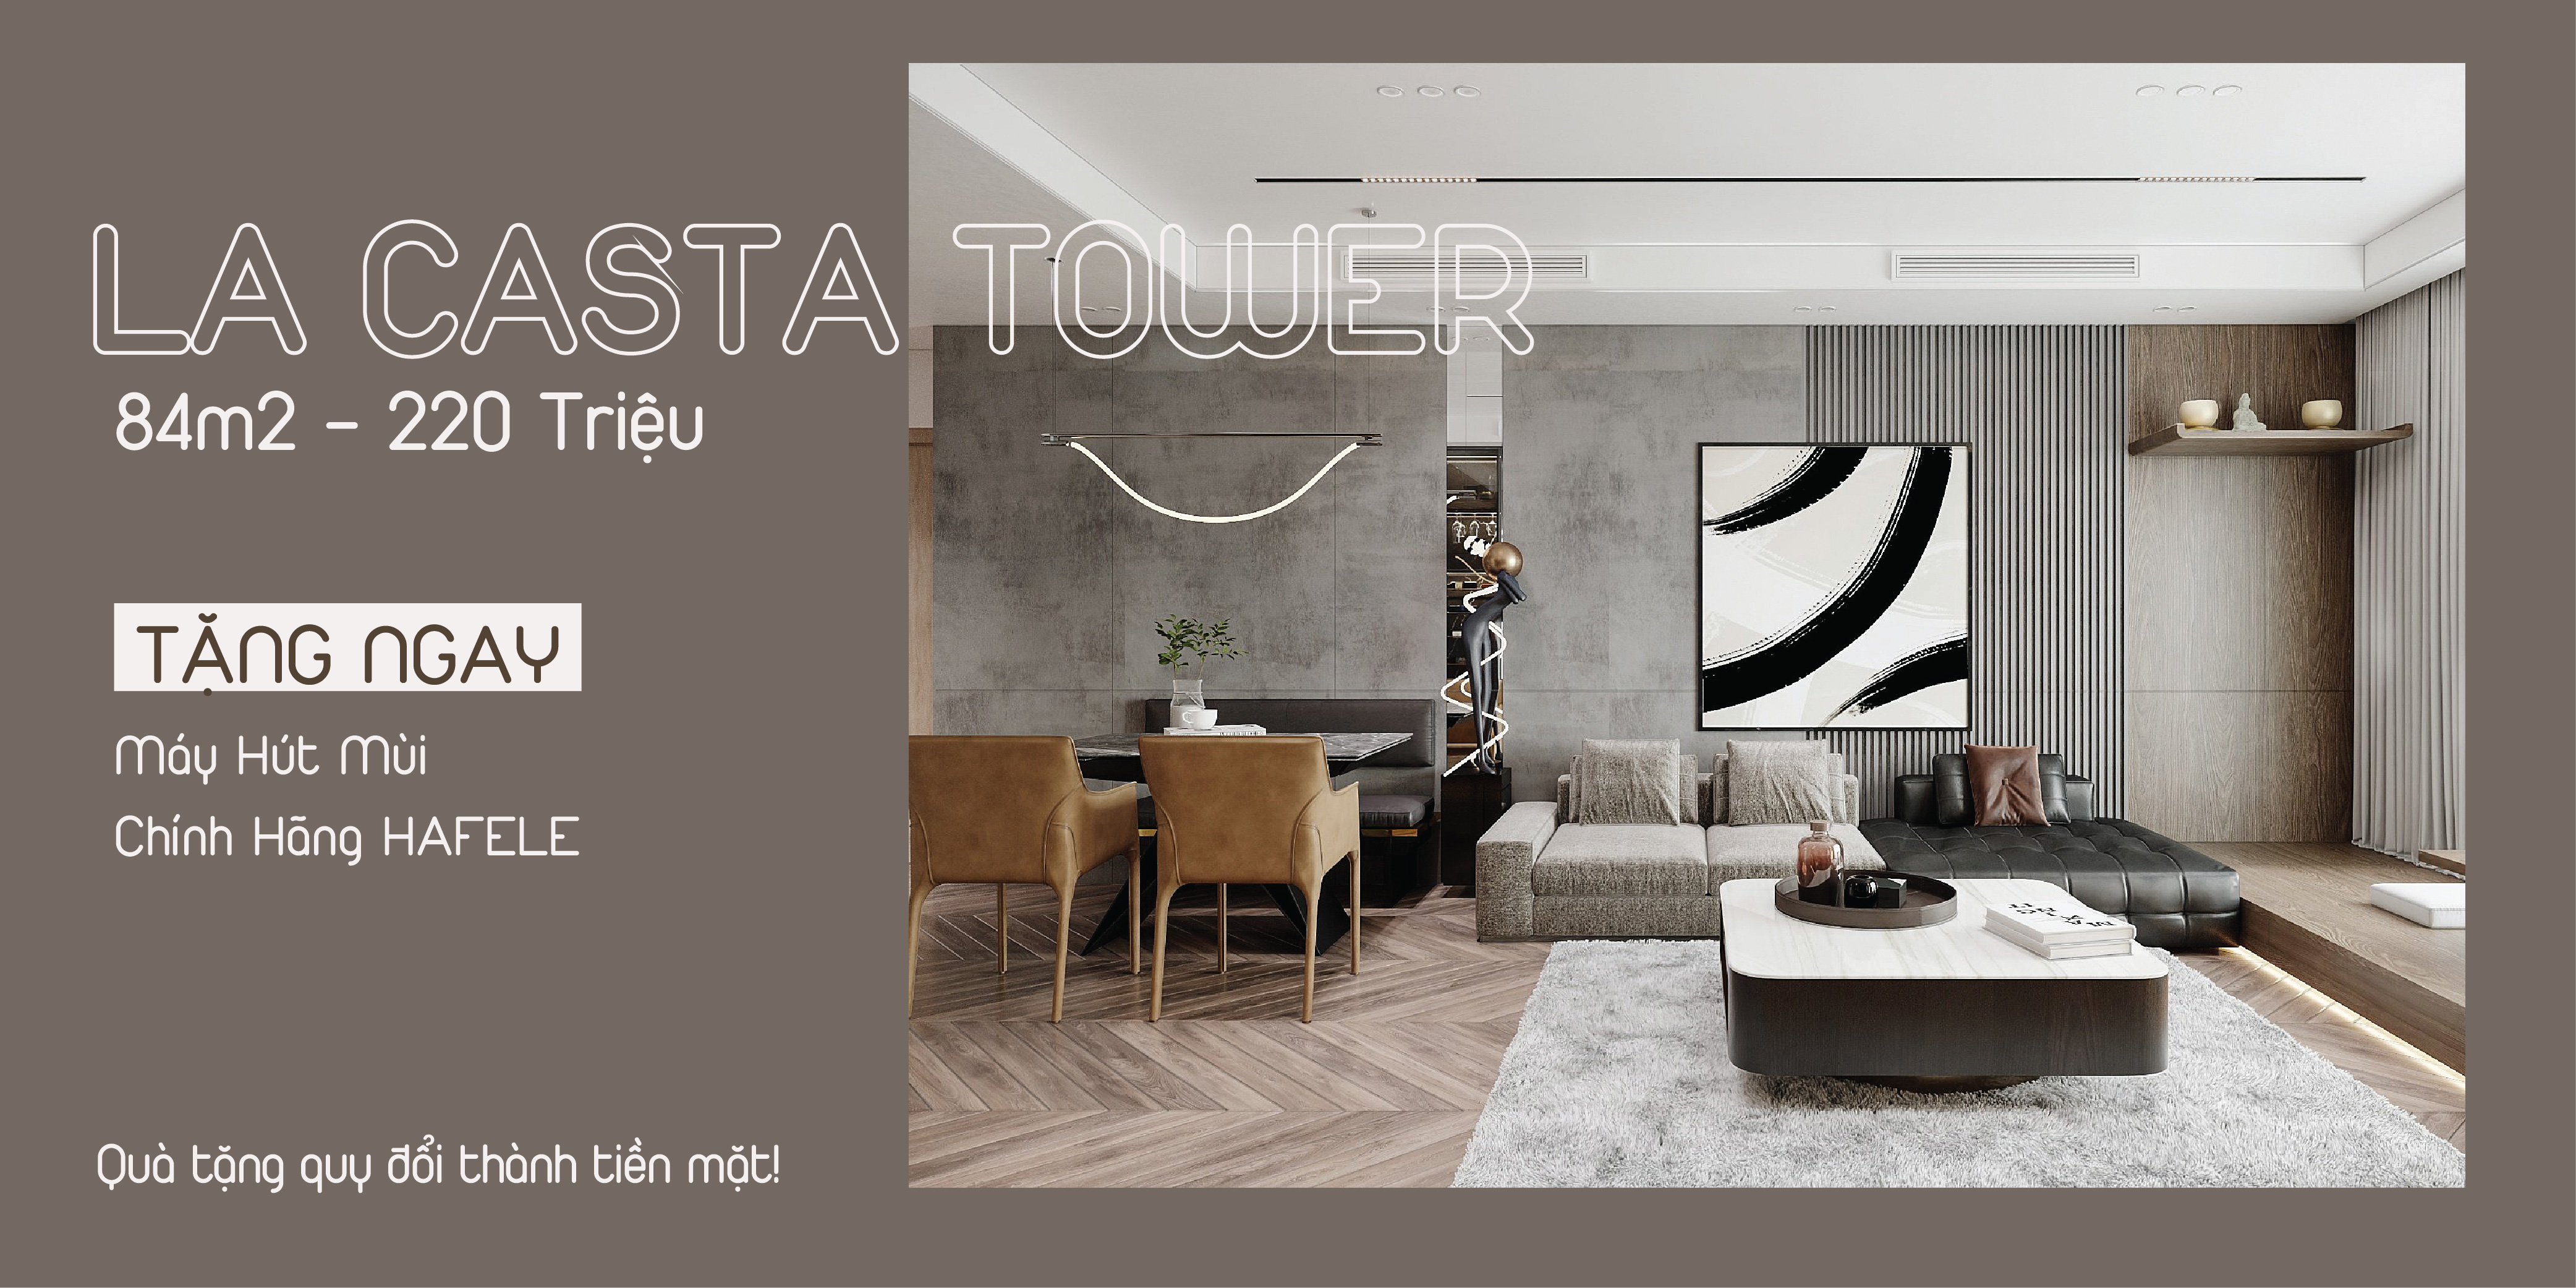 Thiết kế thi công chung cư La Casta Tower 220 Triệu Full nội thất